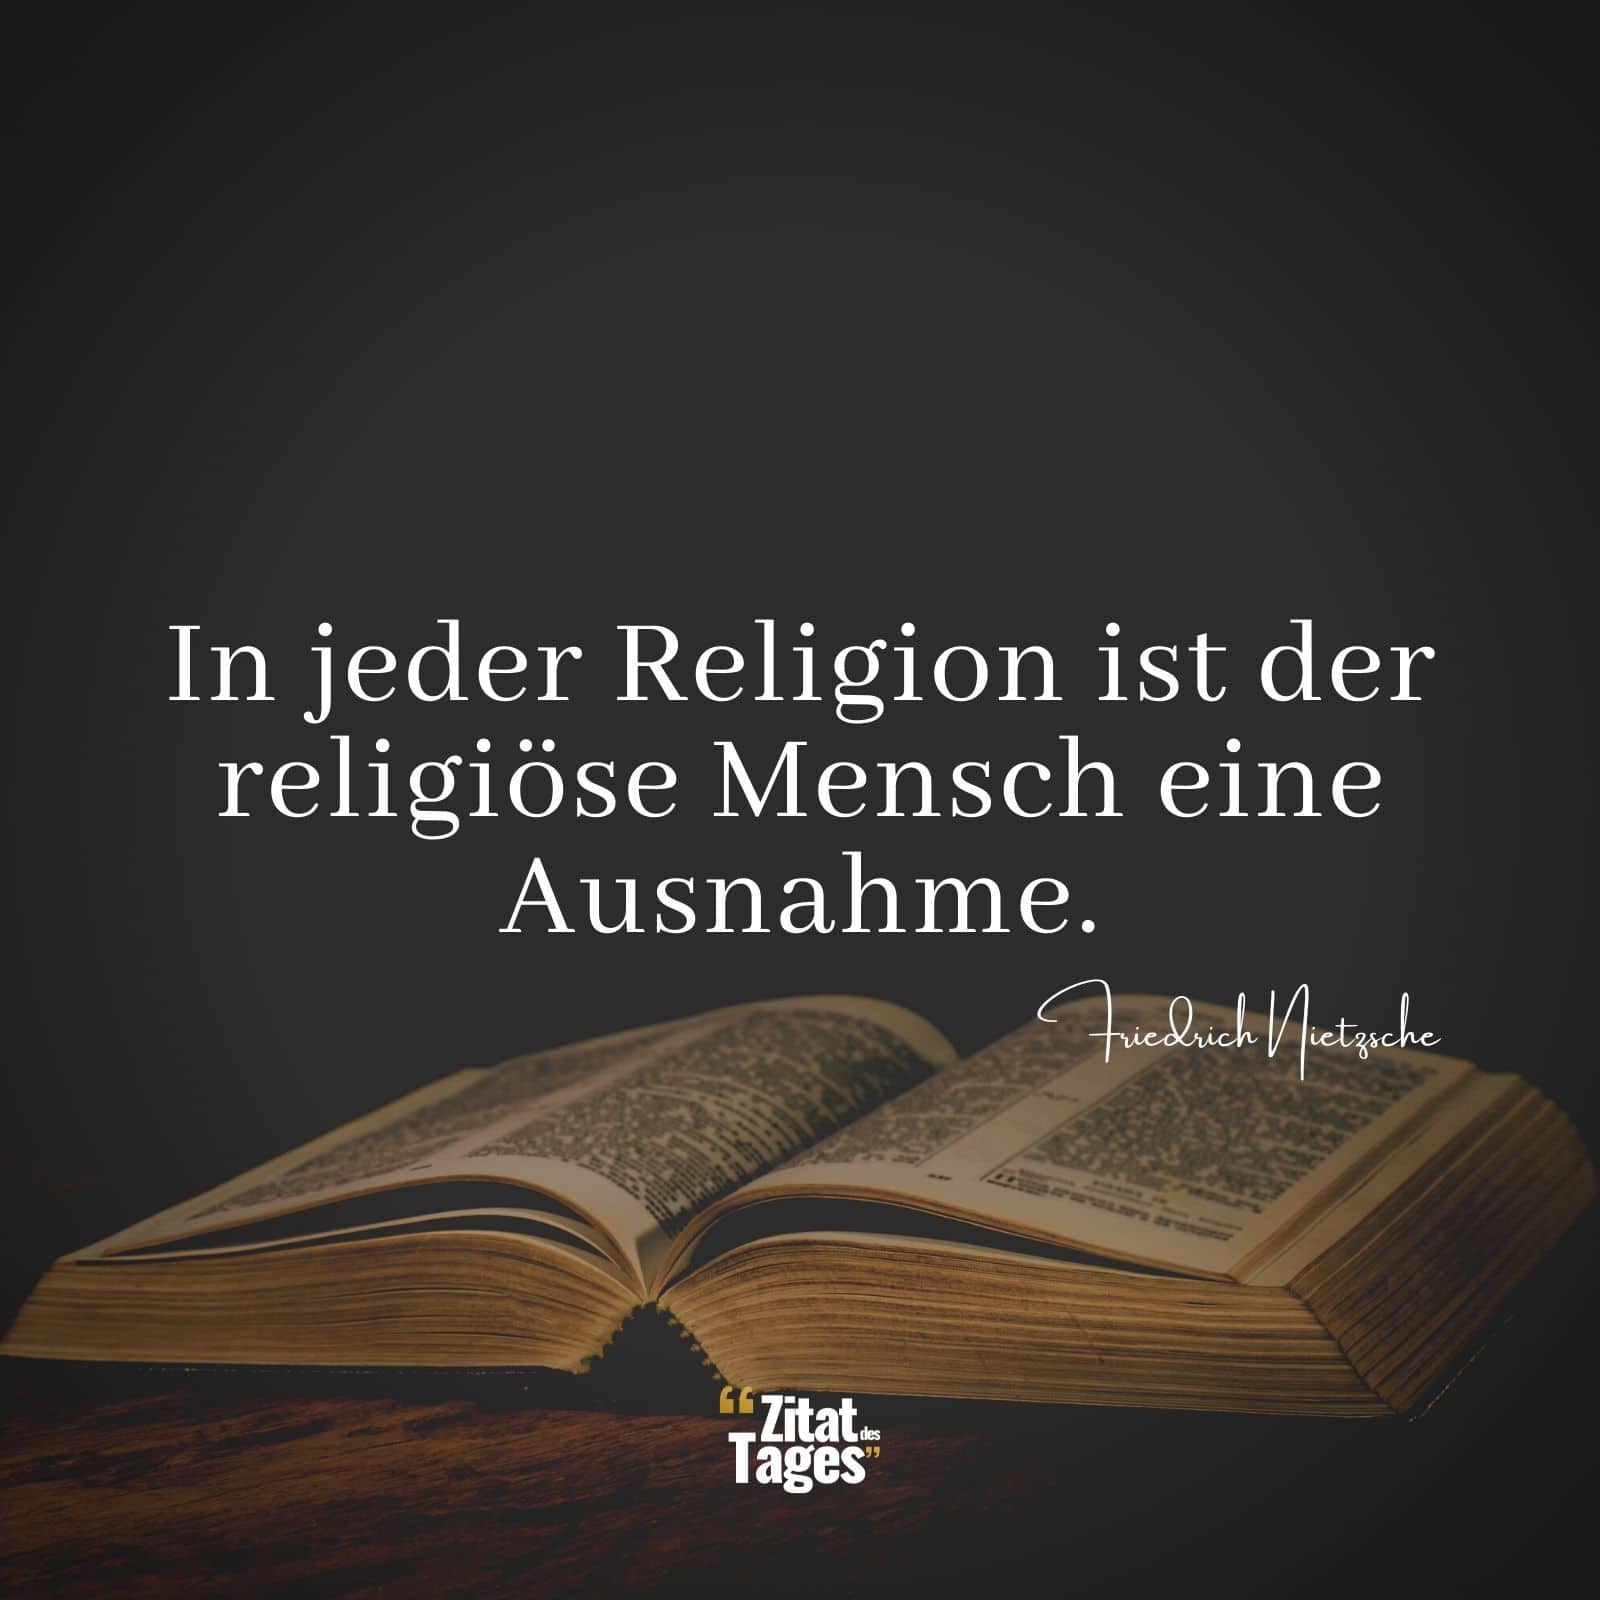 In jeder Religion ist der religiöse Mensch eine Ausnahme. - Friedrich Nietzsche